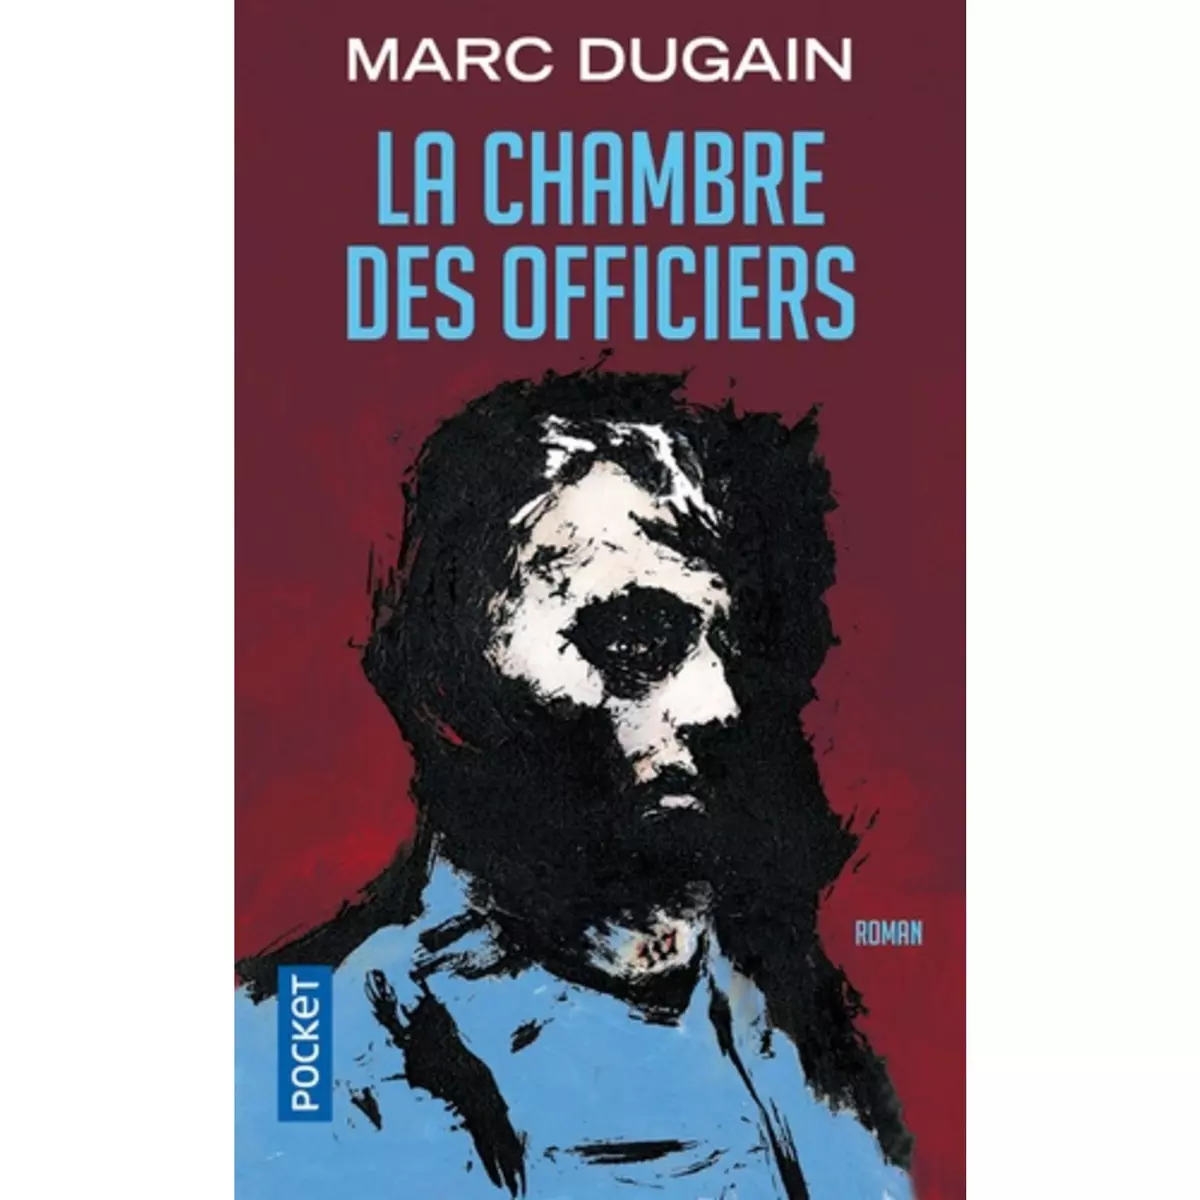  LA CHAMBRE DES OFFICIERS, Dugain Marc